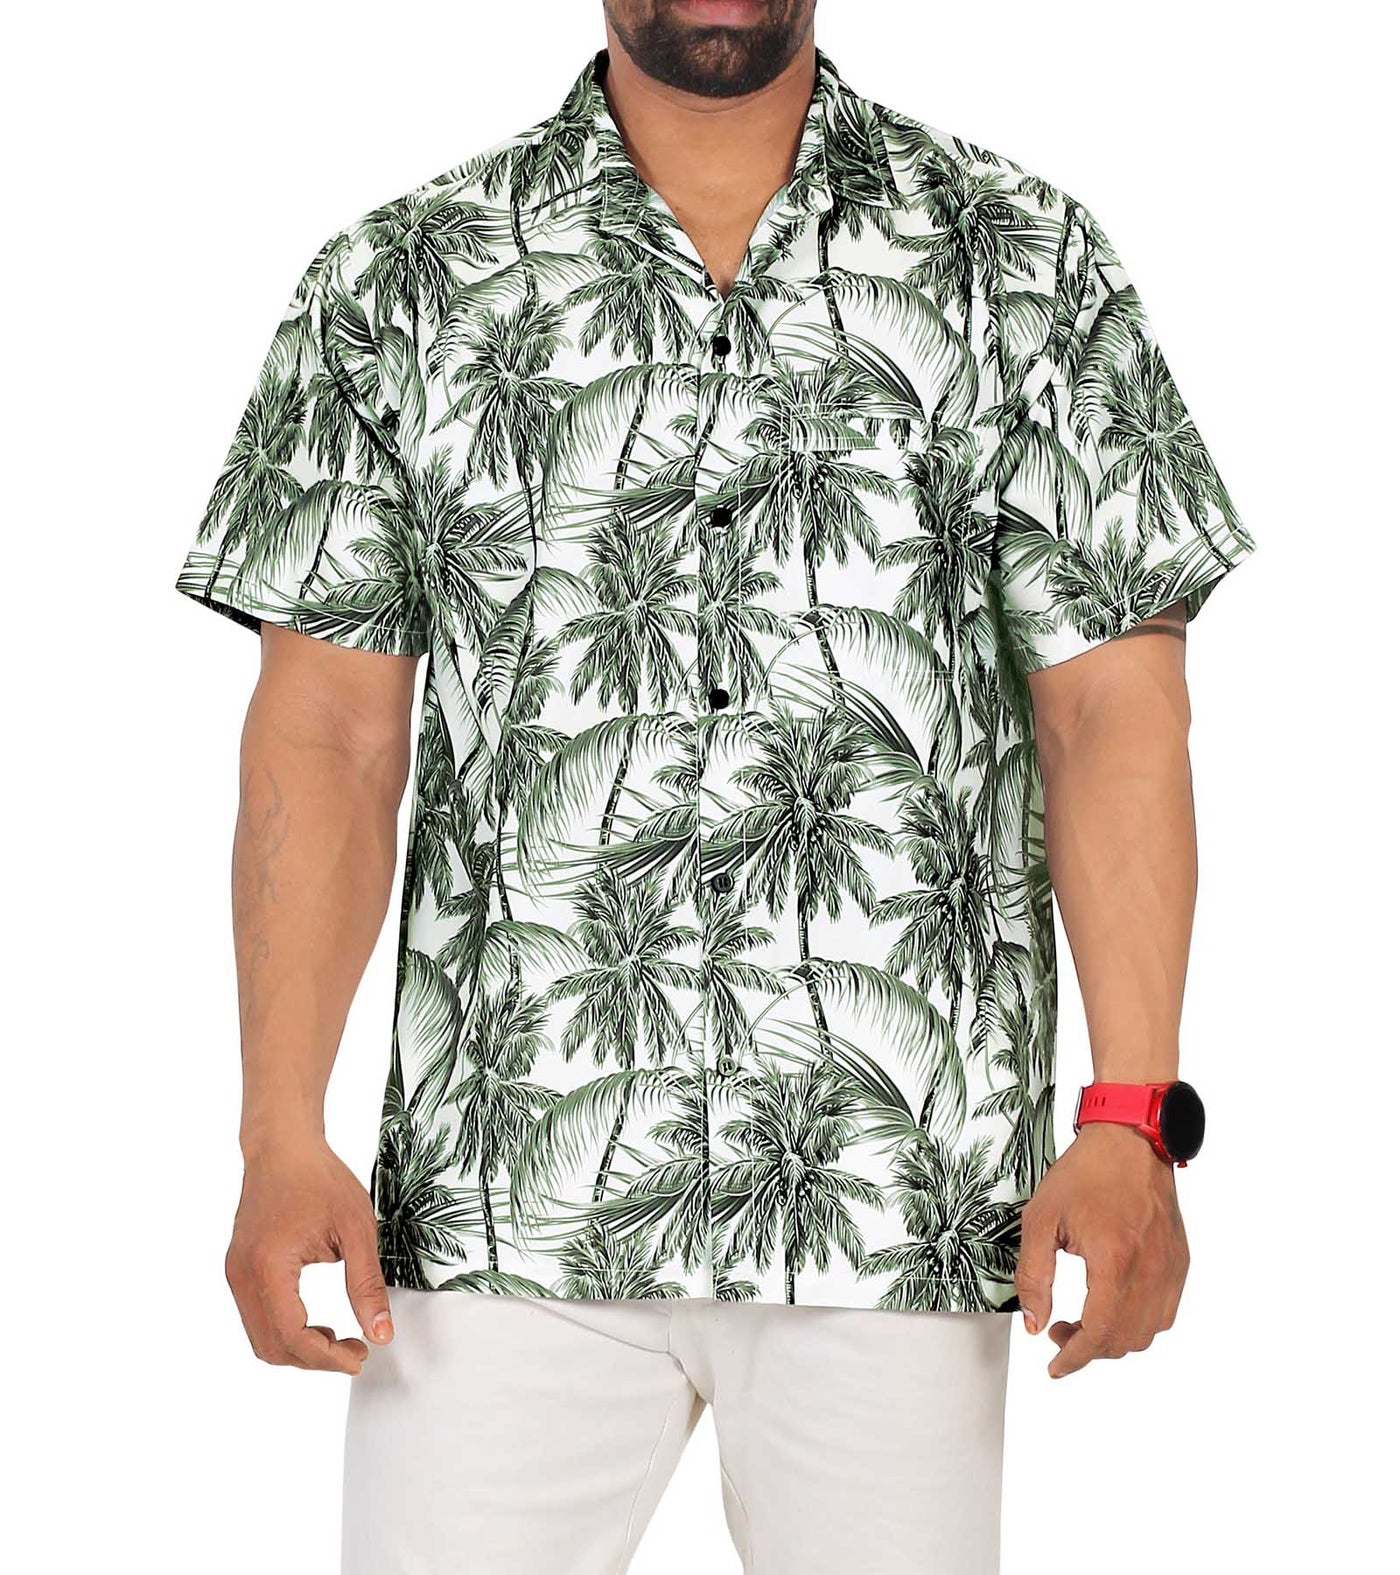 Rich Guy Hawaiian Shirt for Men